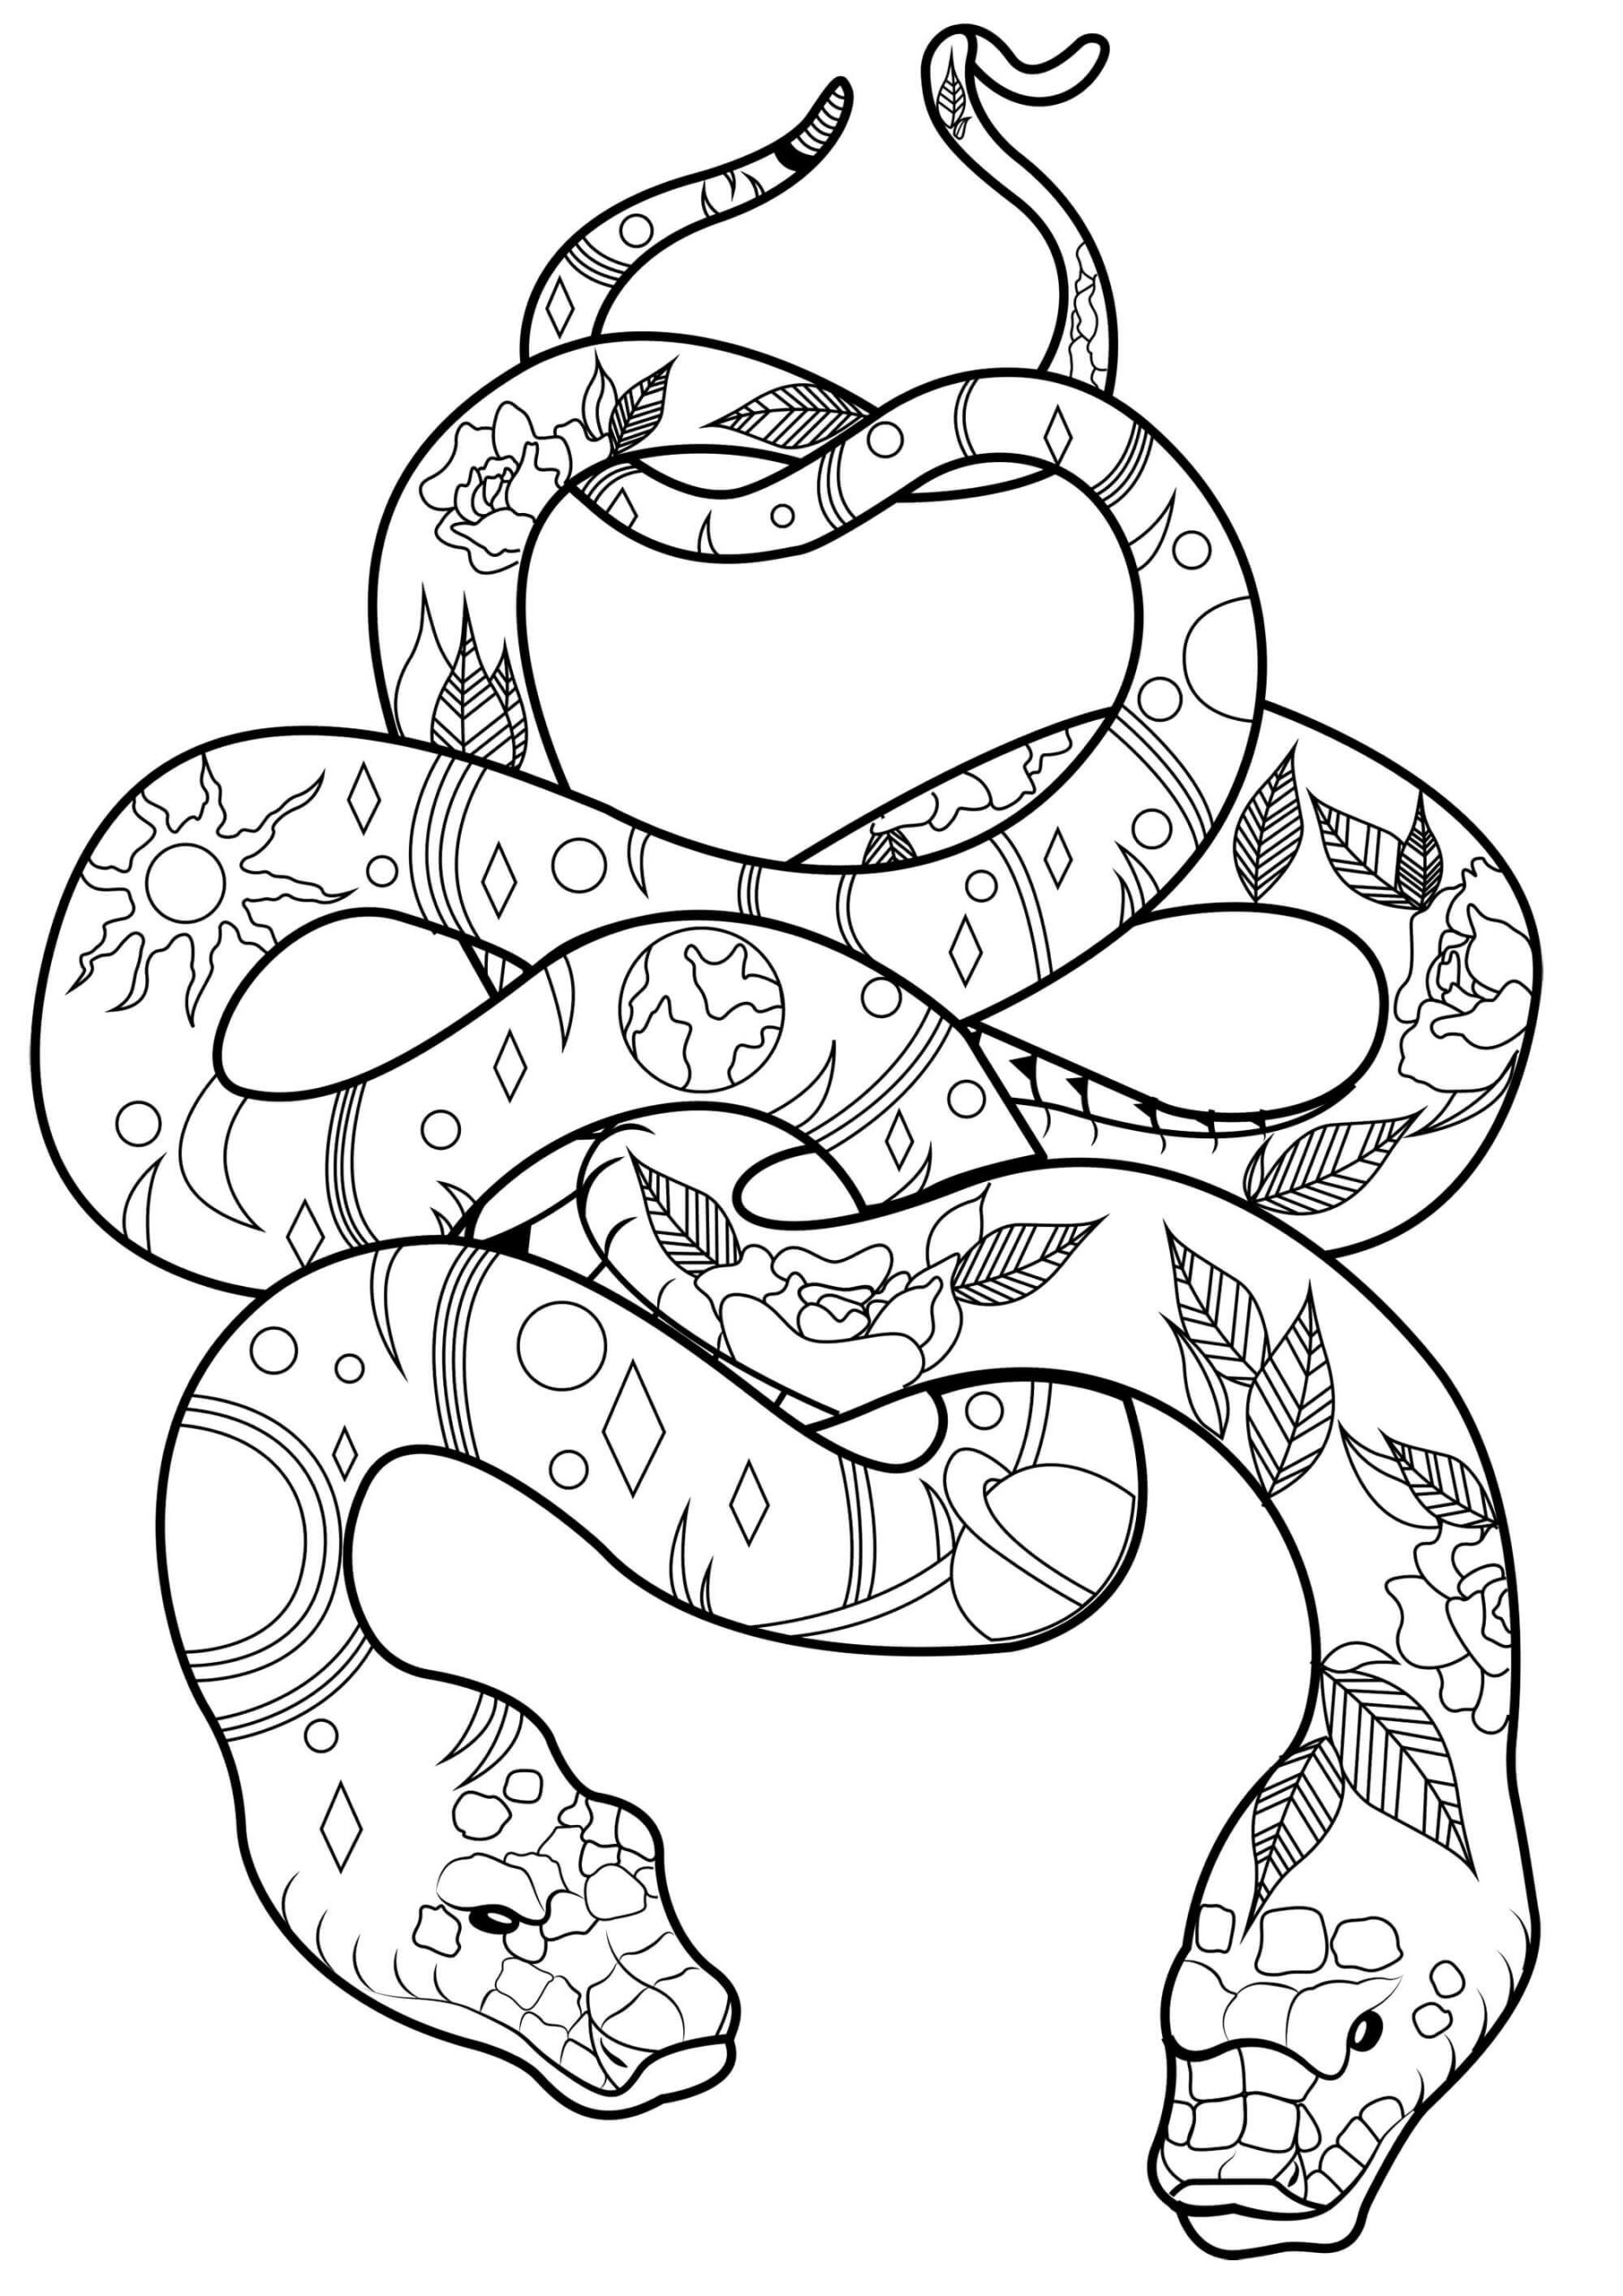 Mandala Two Snakes Coloring Page Mandalas